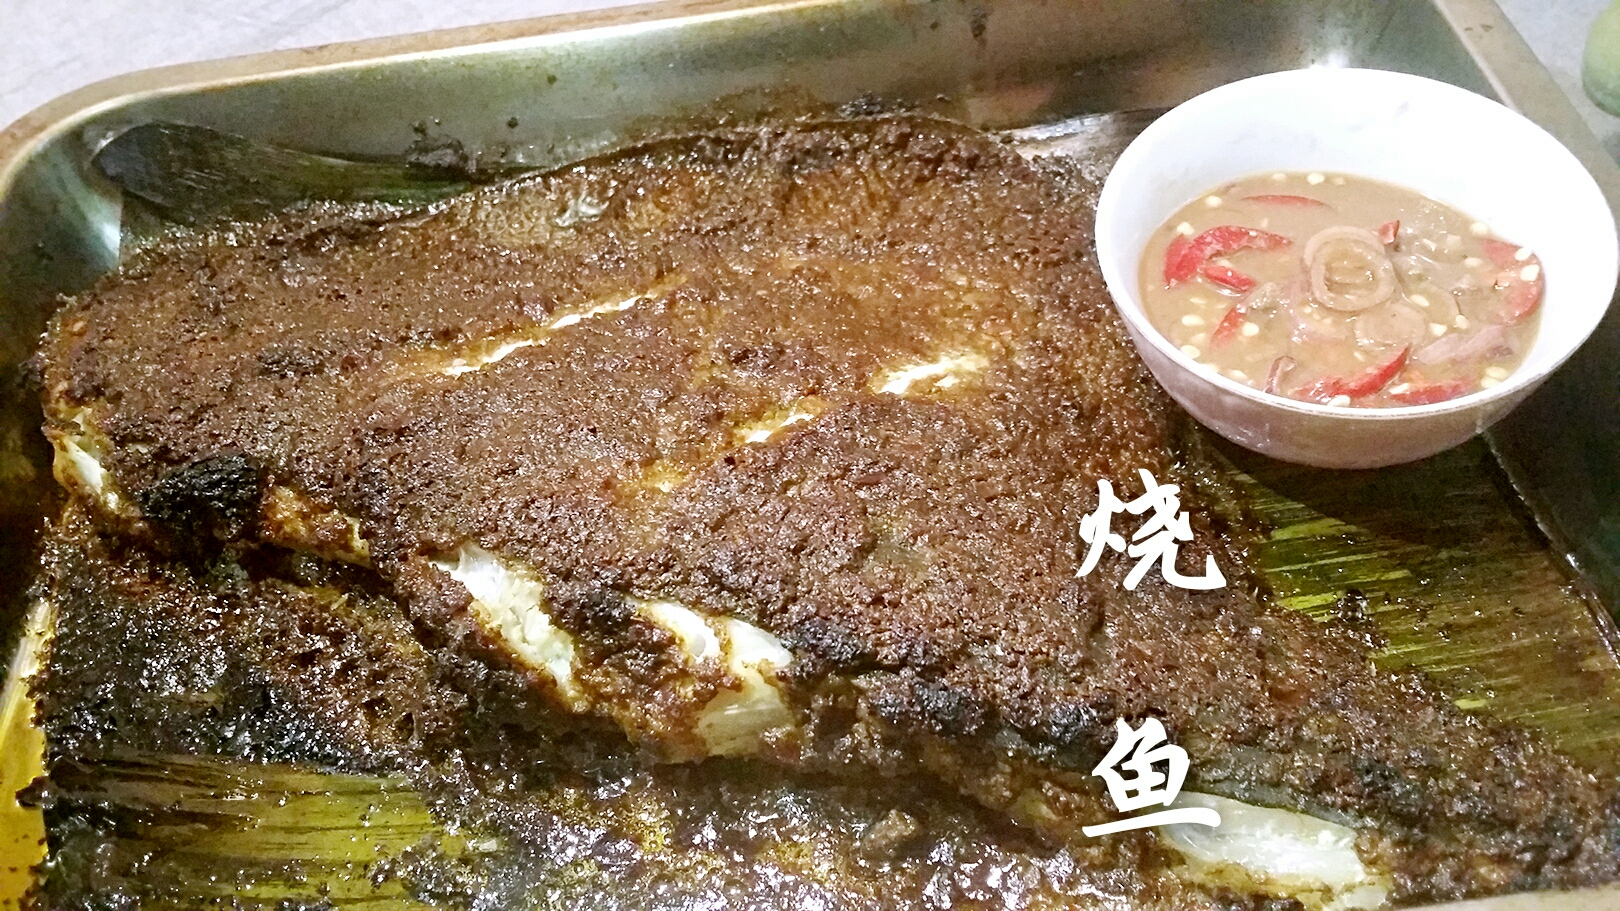 烤箱版马来西亚烧鱼(Ikan Bakar)的做法